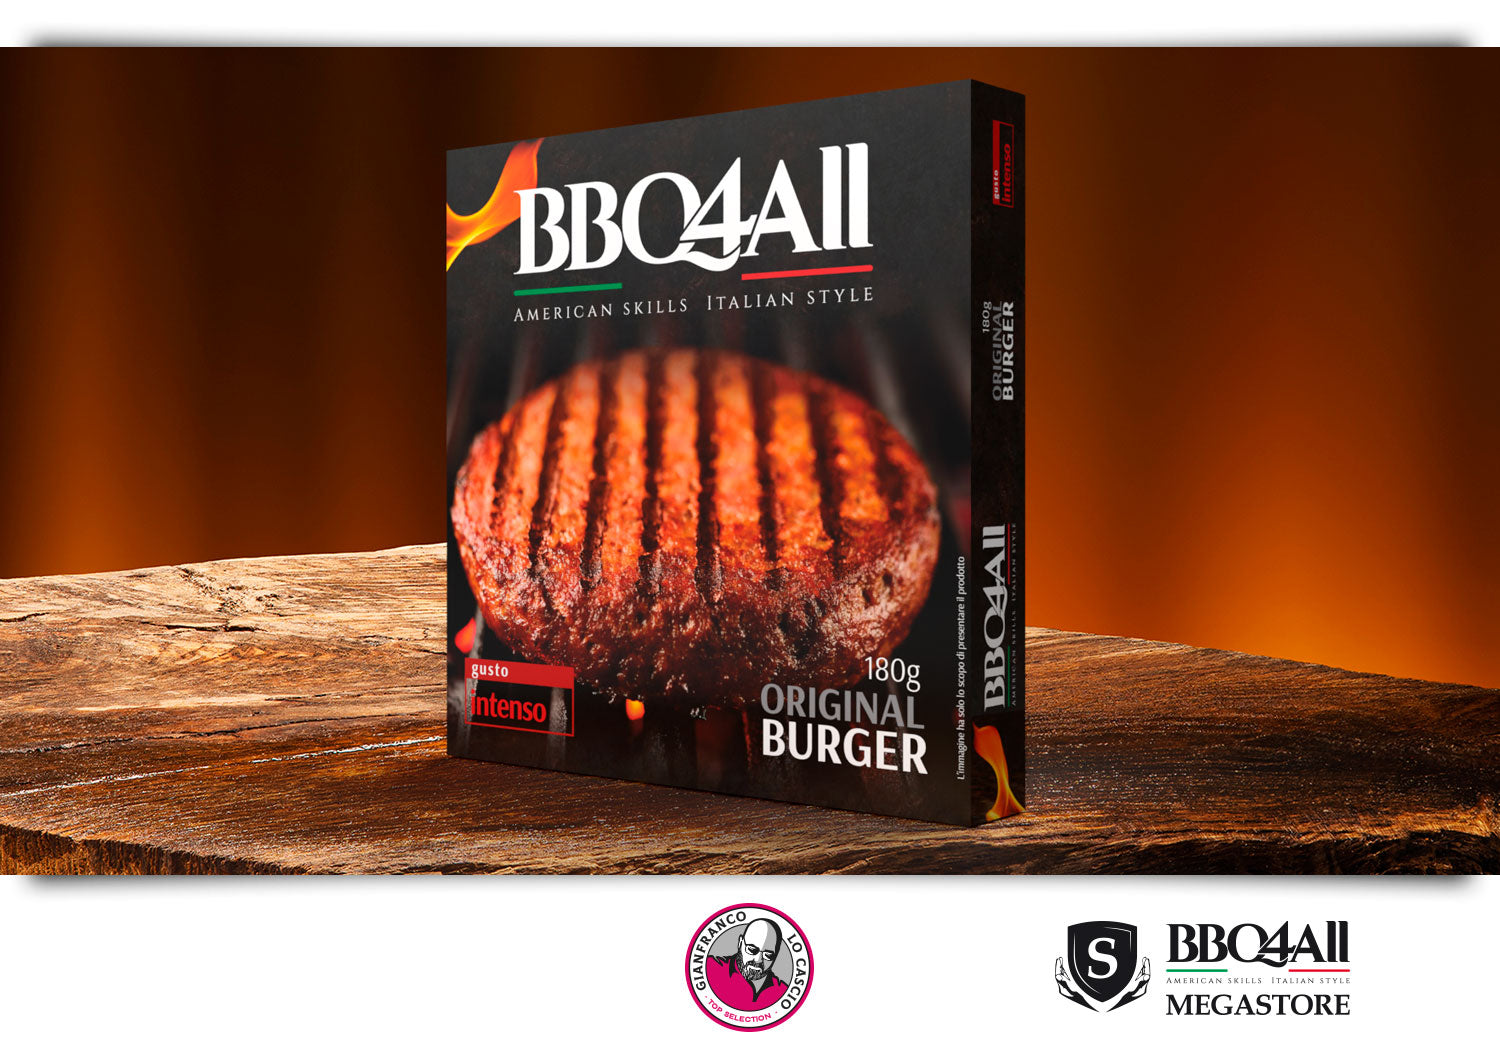 L'Original Burger Special di BBQ4ALL disponibile in un packaging da 6 confezioni in skin da 180grammi. Gusto intenso, qualità sublime